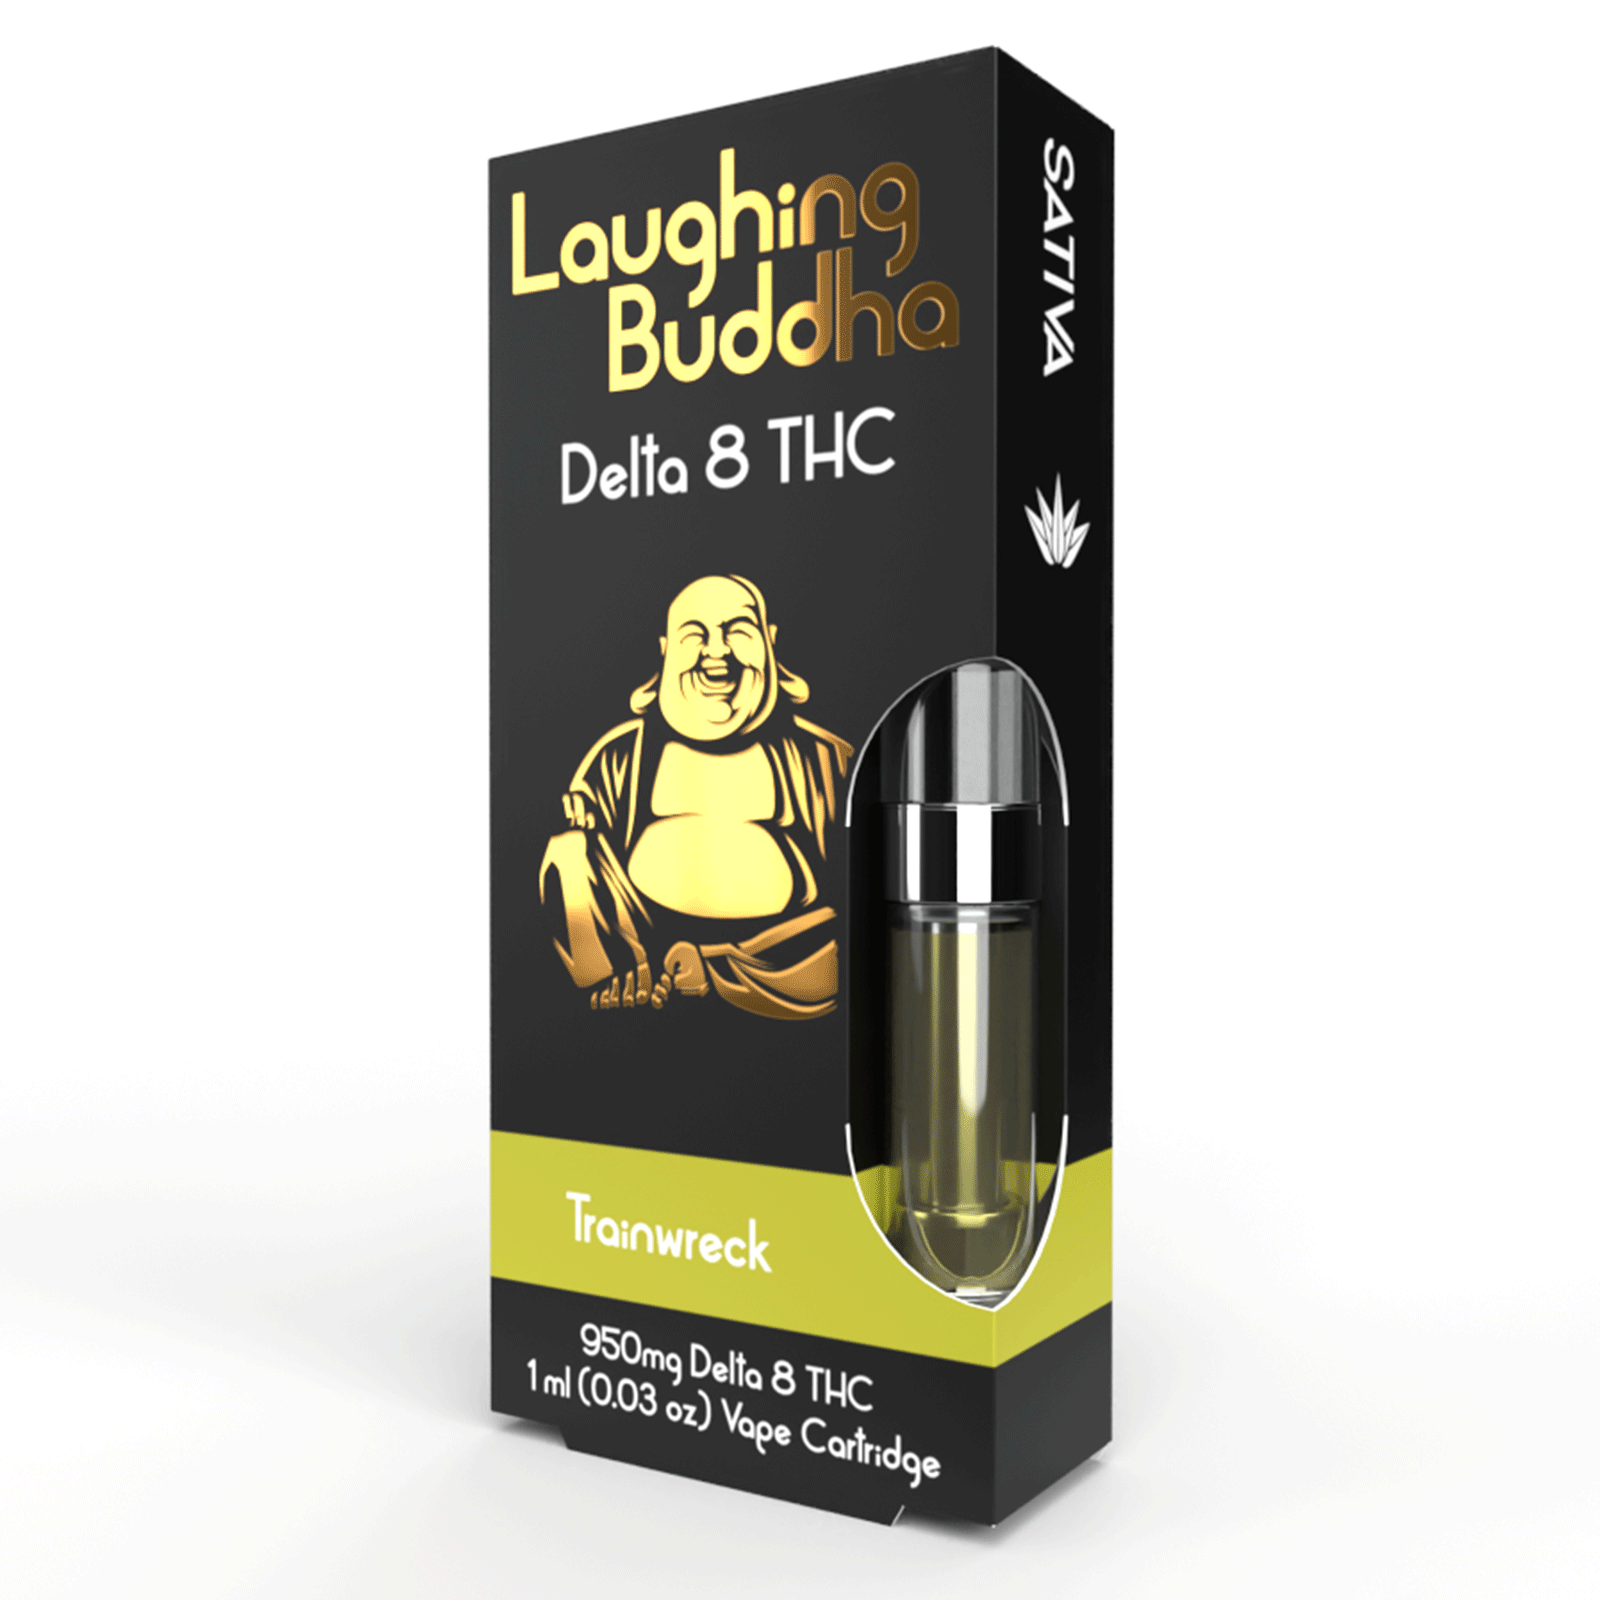 Laughing Buddha 1ml vape cartridge - Trainwreck